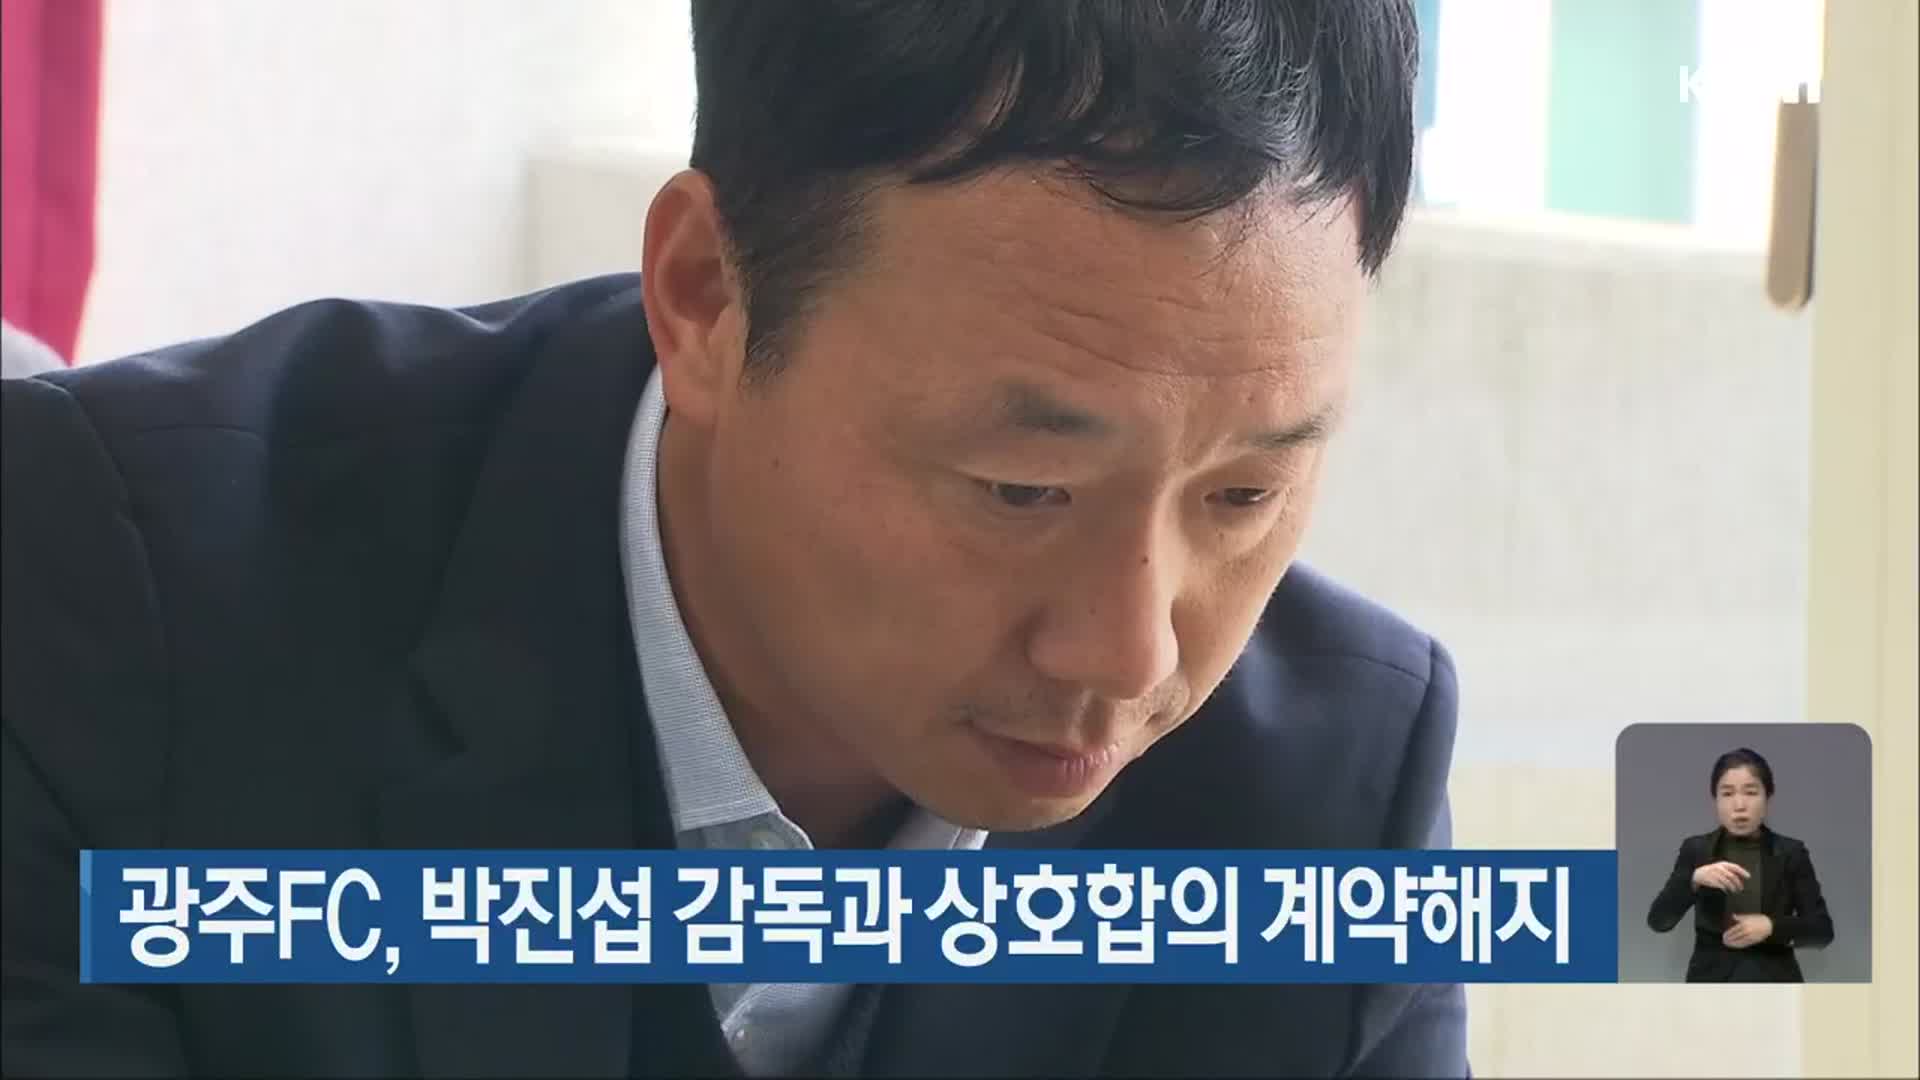 광주FC, 박진섭 감독과 상호합의 계약해지